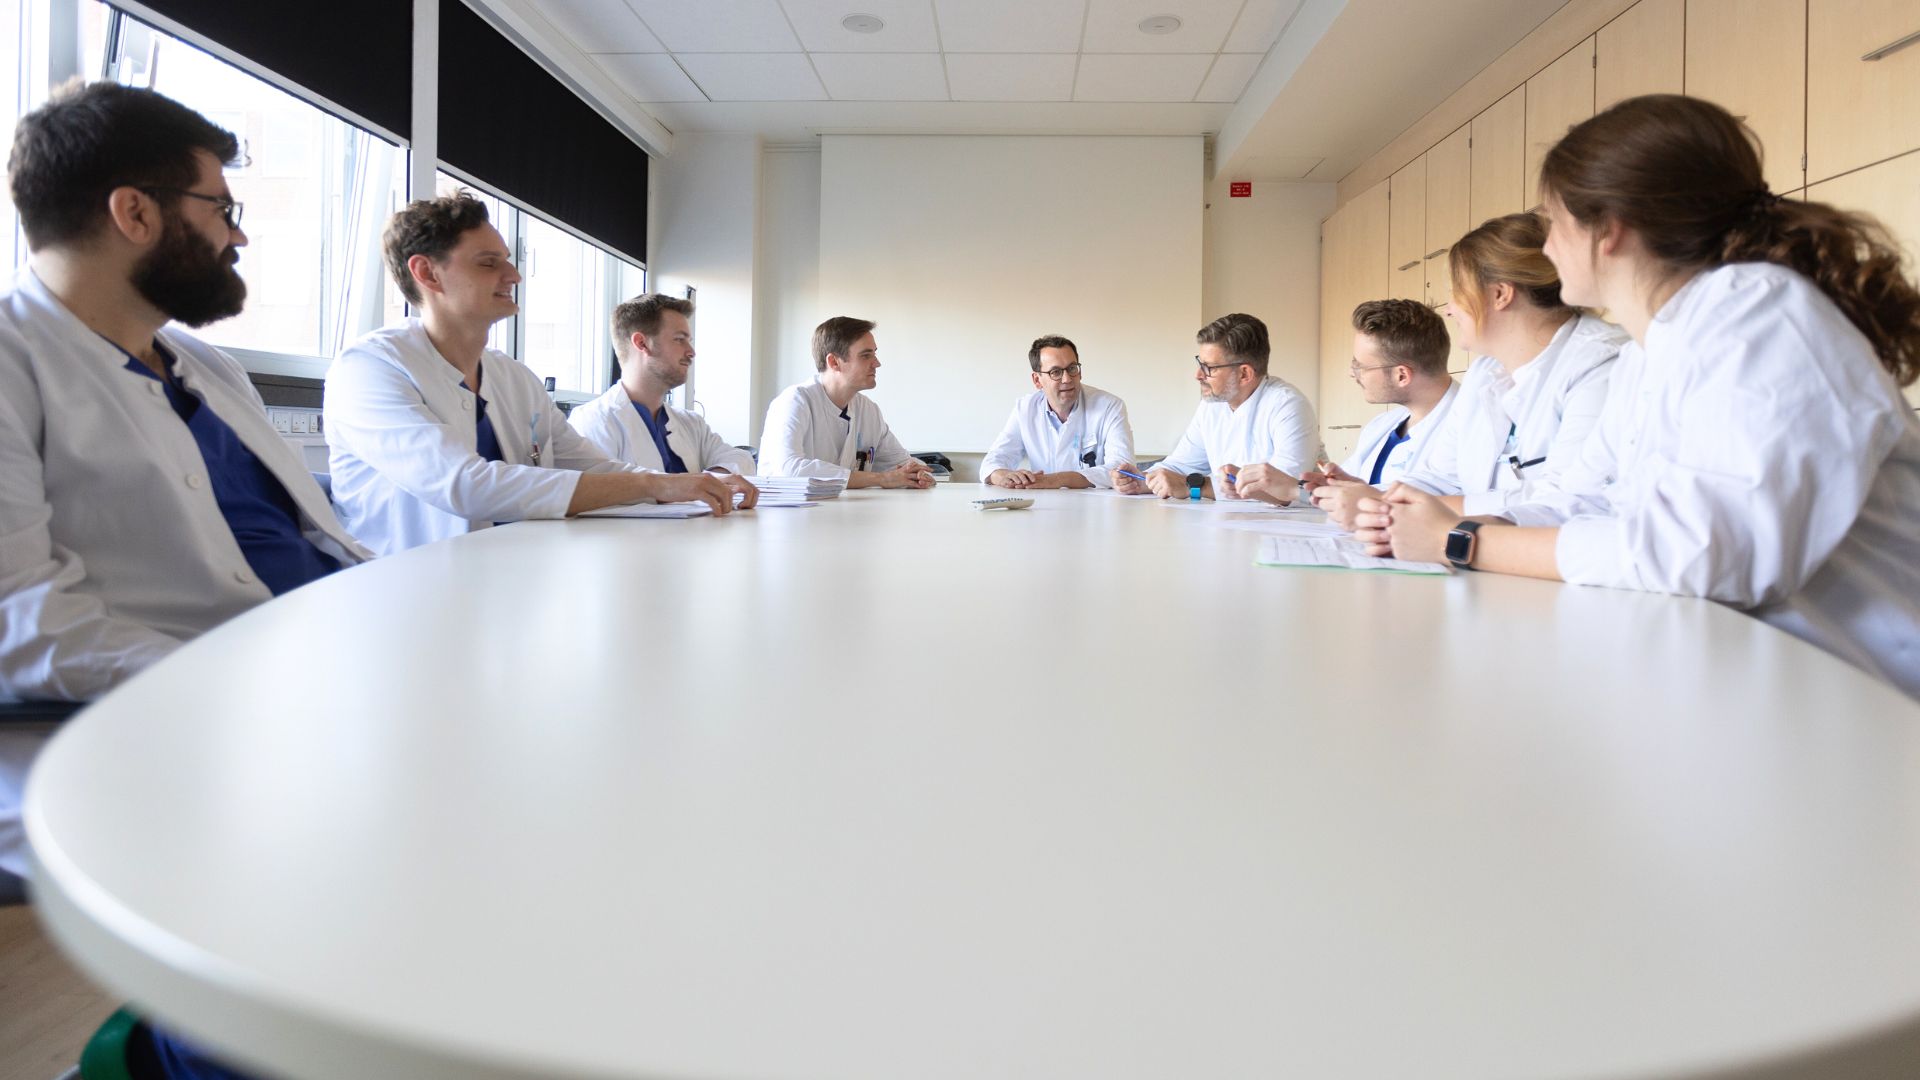 Das Ärzteteam der Klinik für Urologie am Marien Hospital Düsseldorf sitzt um einen runden Tisch während einer Besprechung.